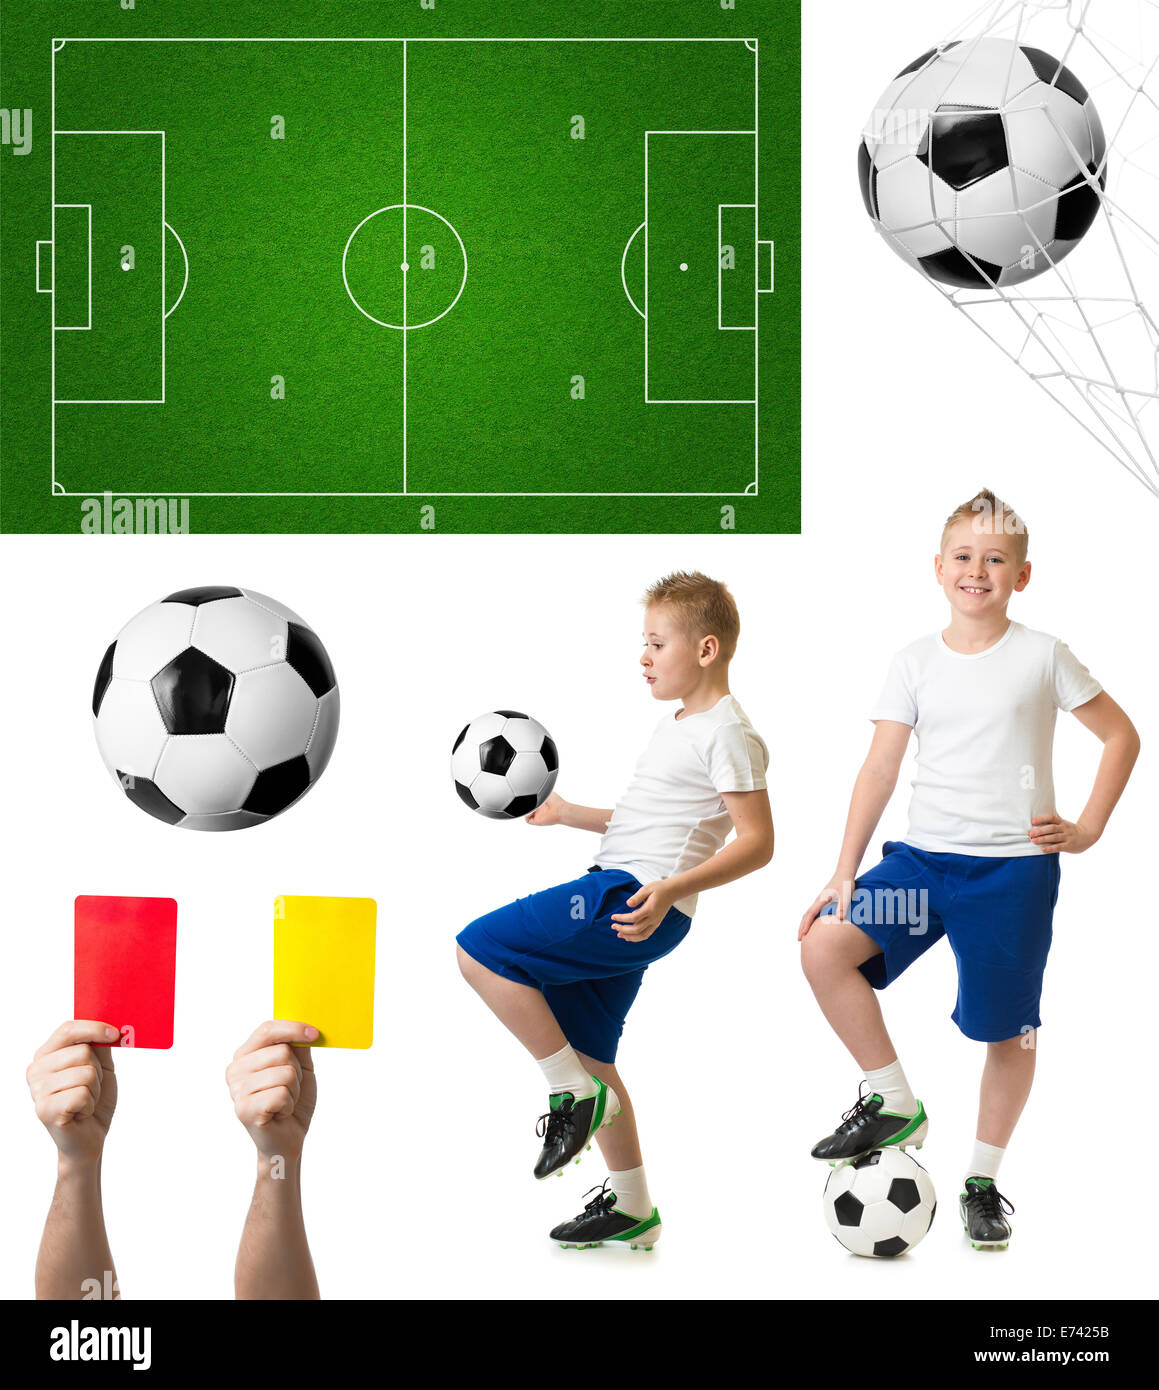 El fútbol y el fútbol como jugador, bola, campo Foto de stock